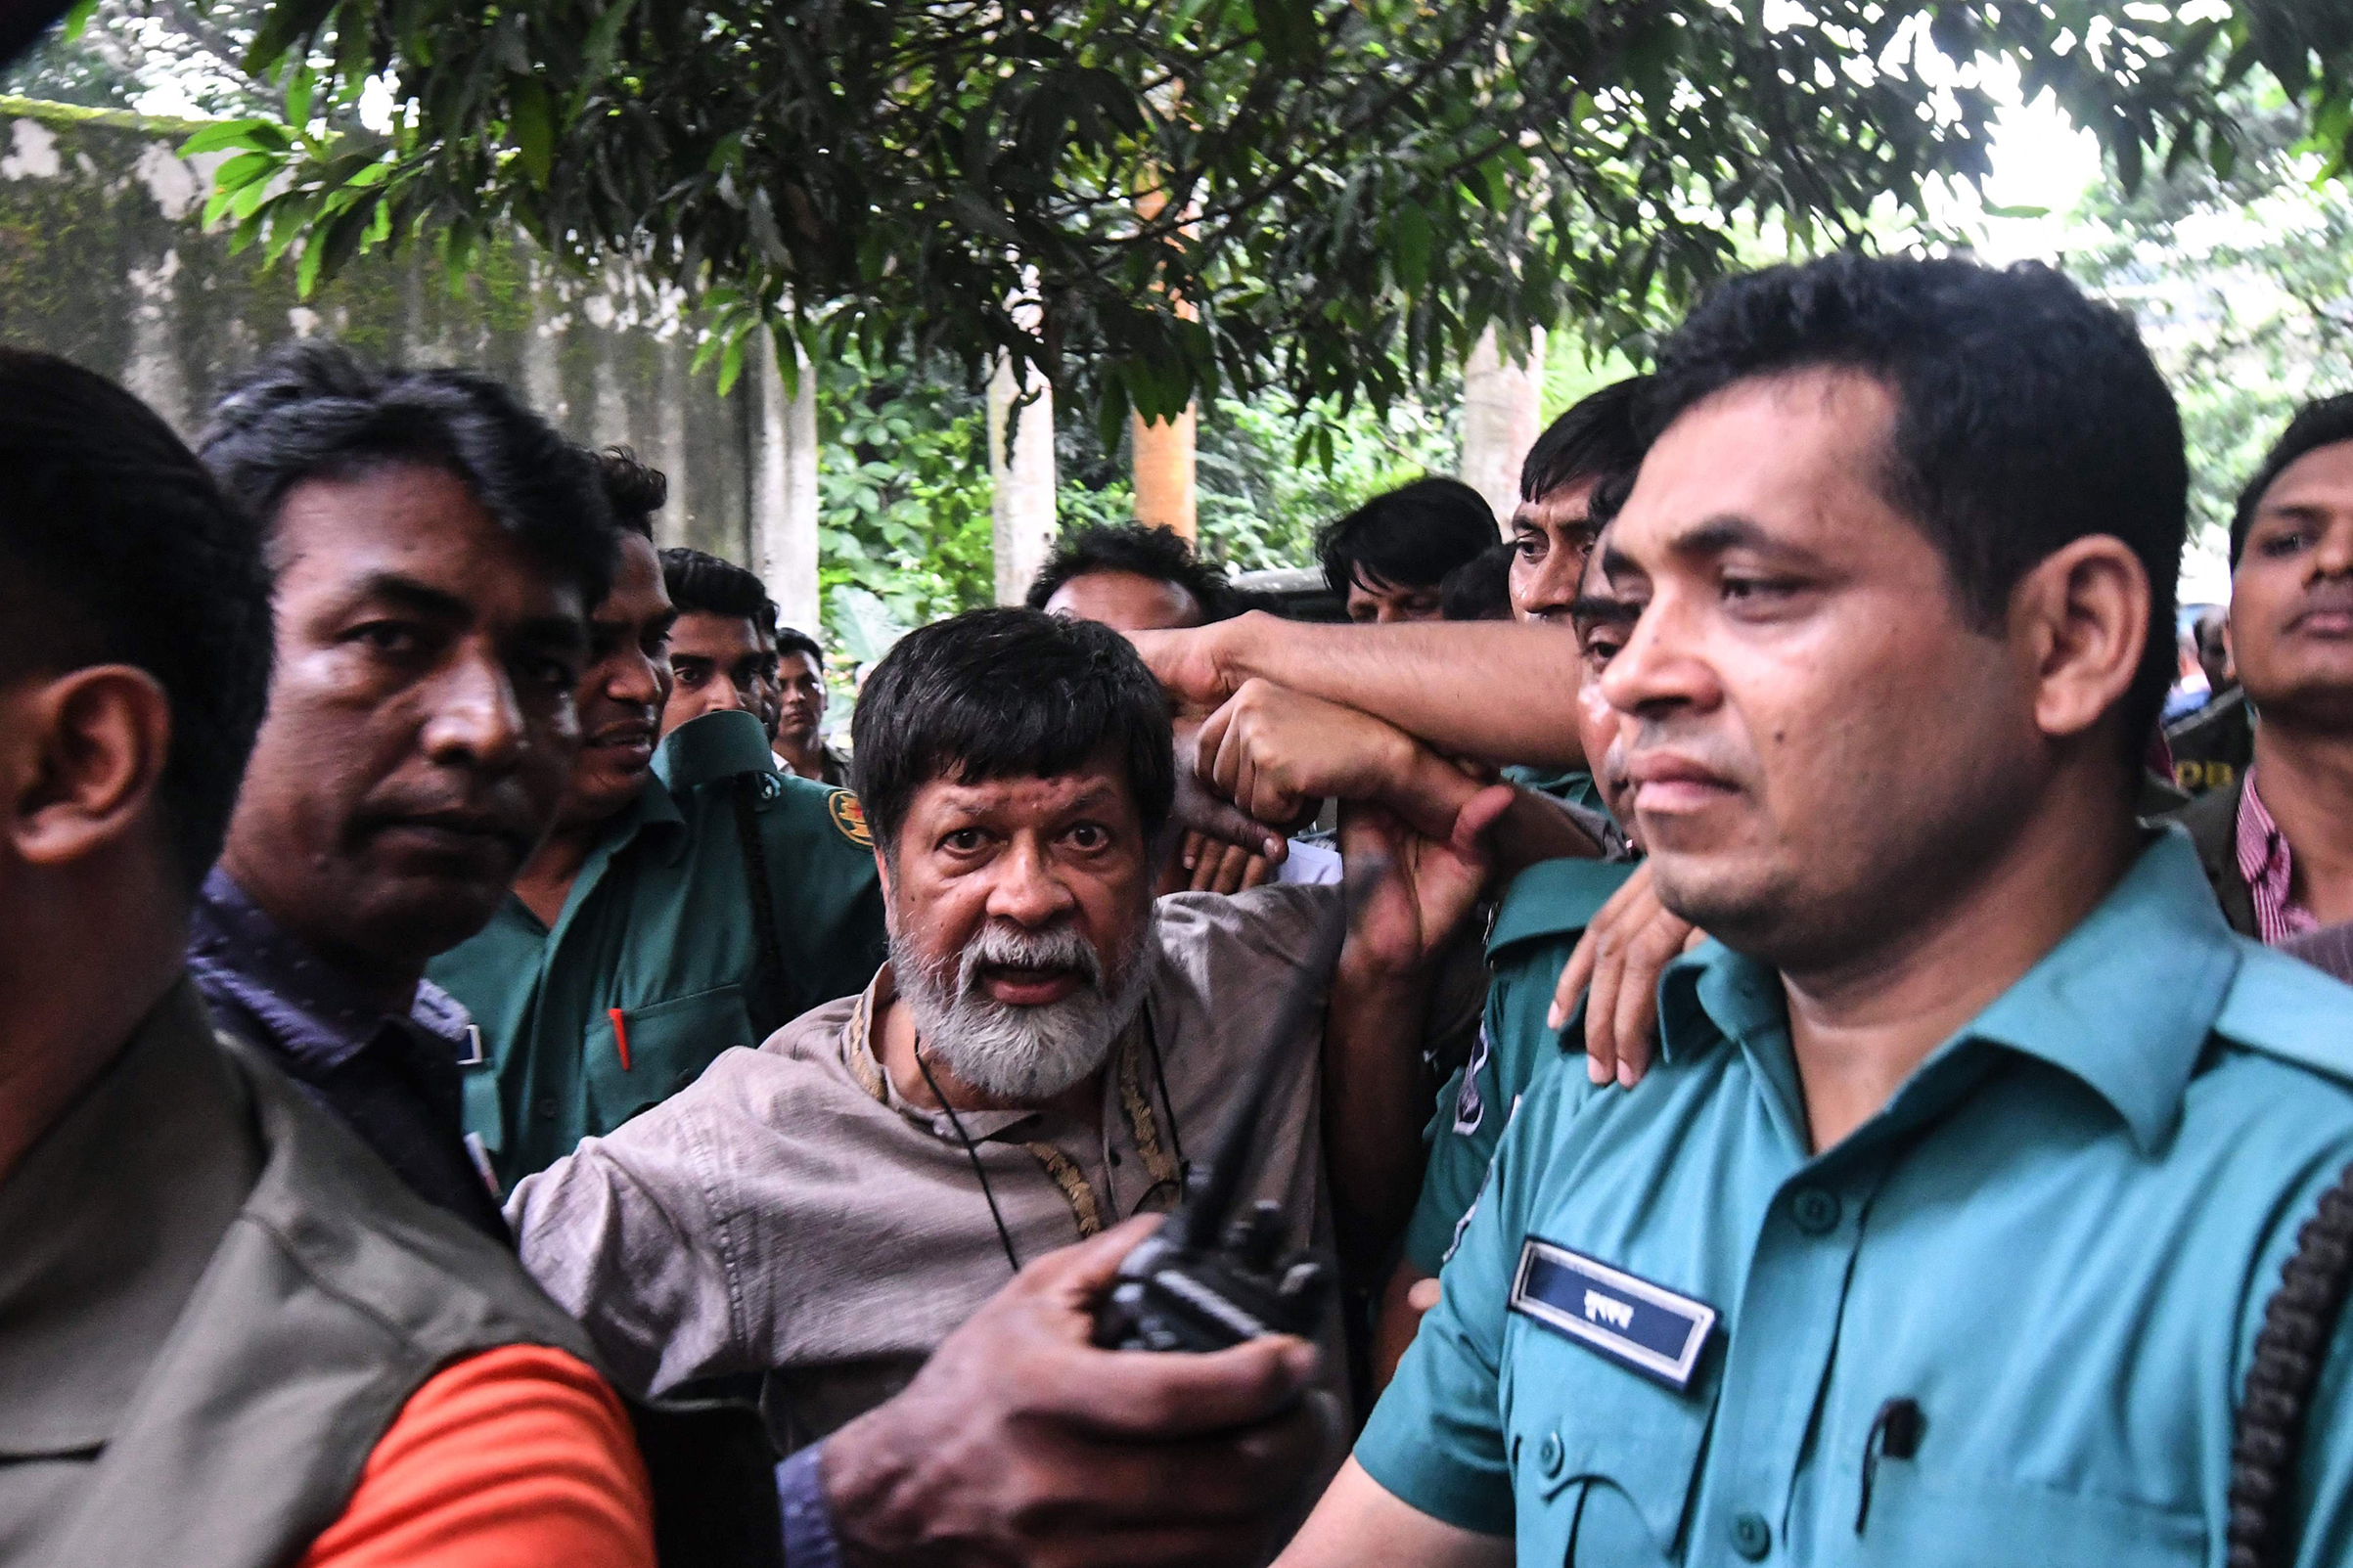 shahidul-alam-bangladesh-photographer-arrested